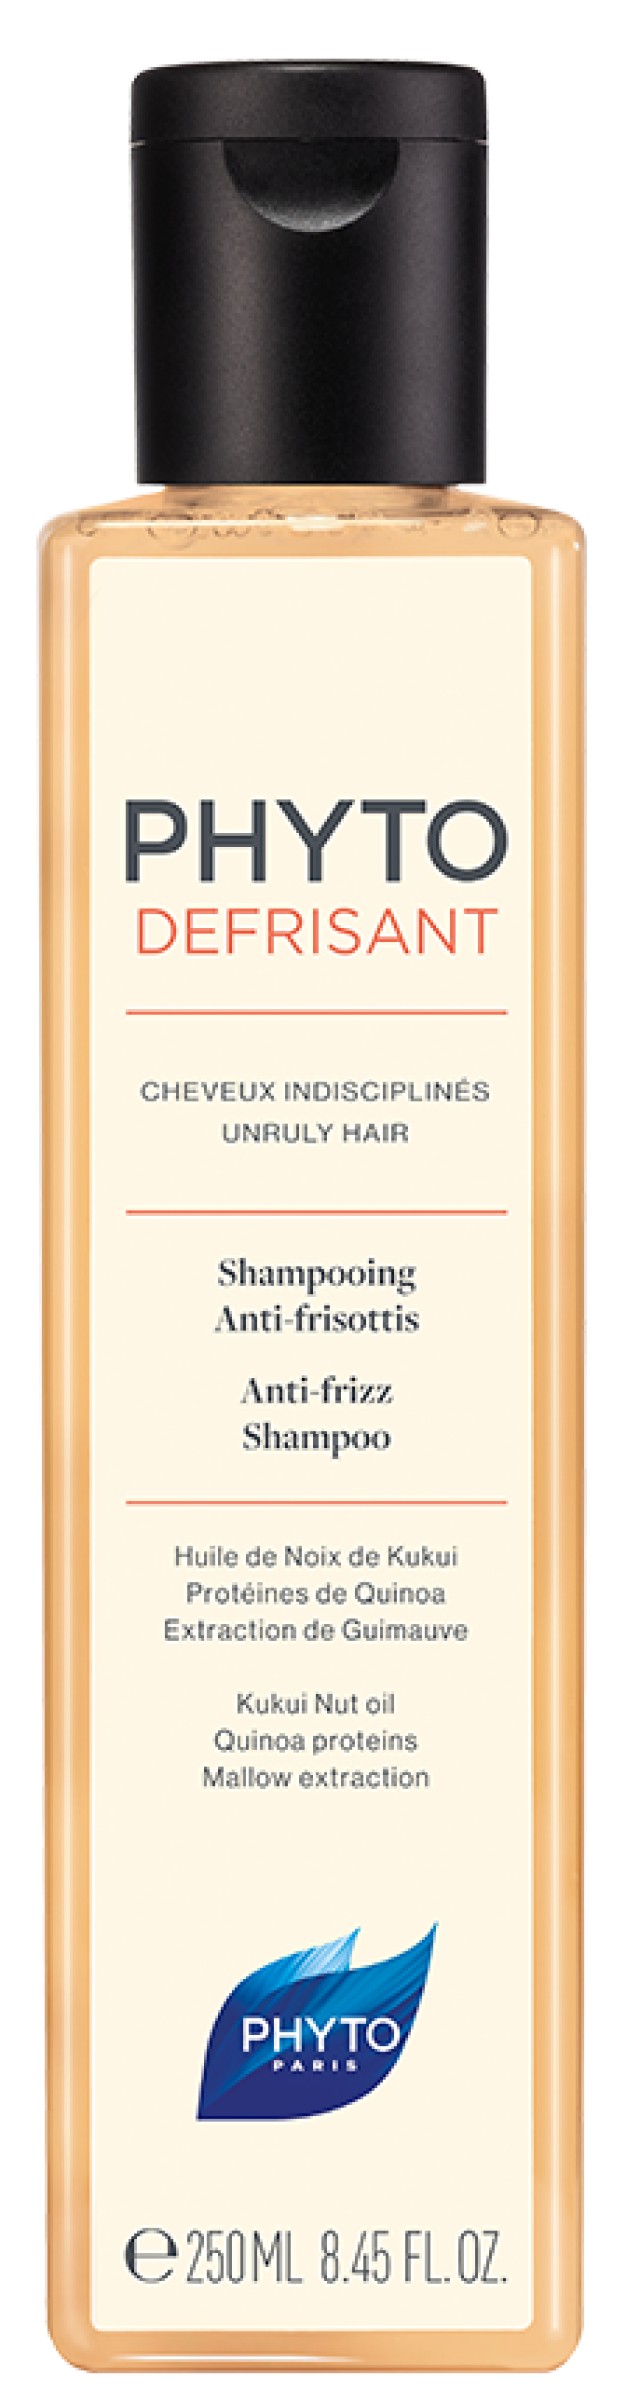 Phyto Phytodefrisant Anti-frizz Shampoo 250ML